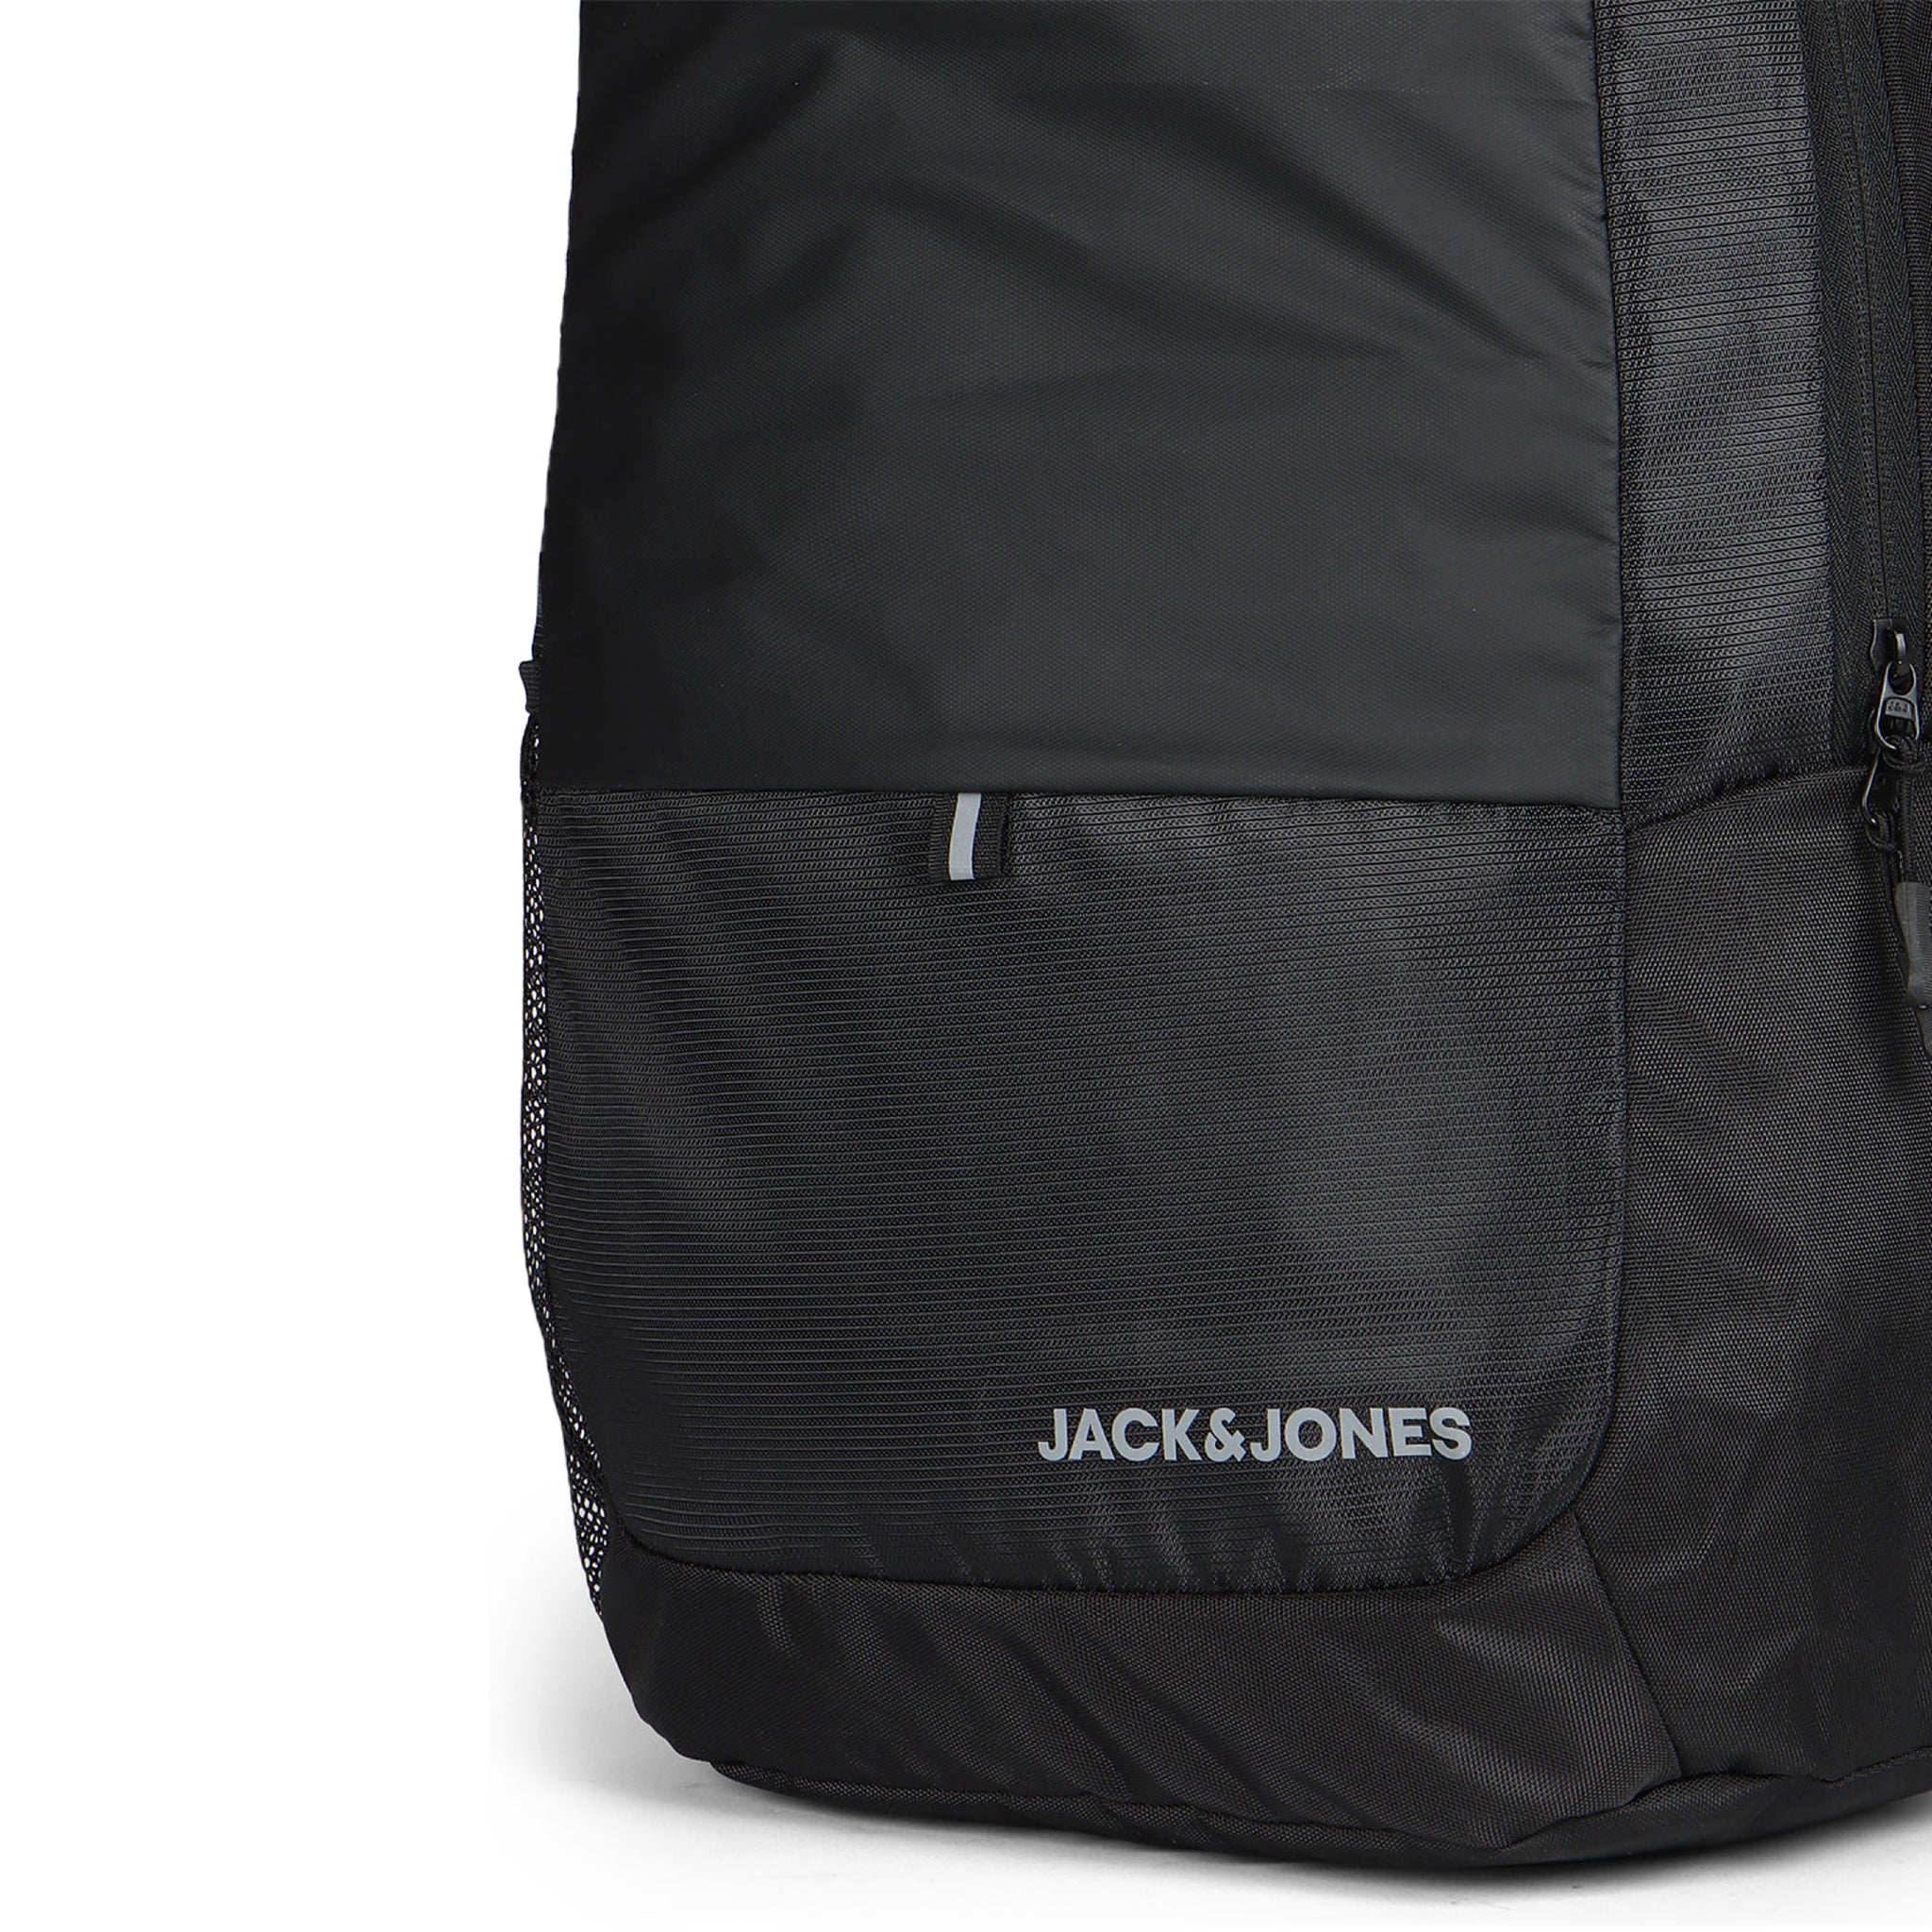 Jack and jones Theo pro bagpack